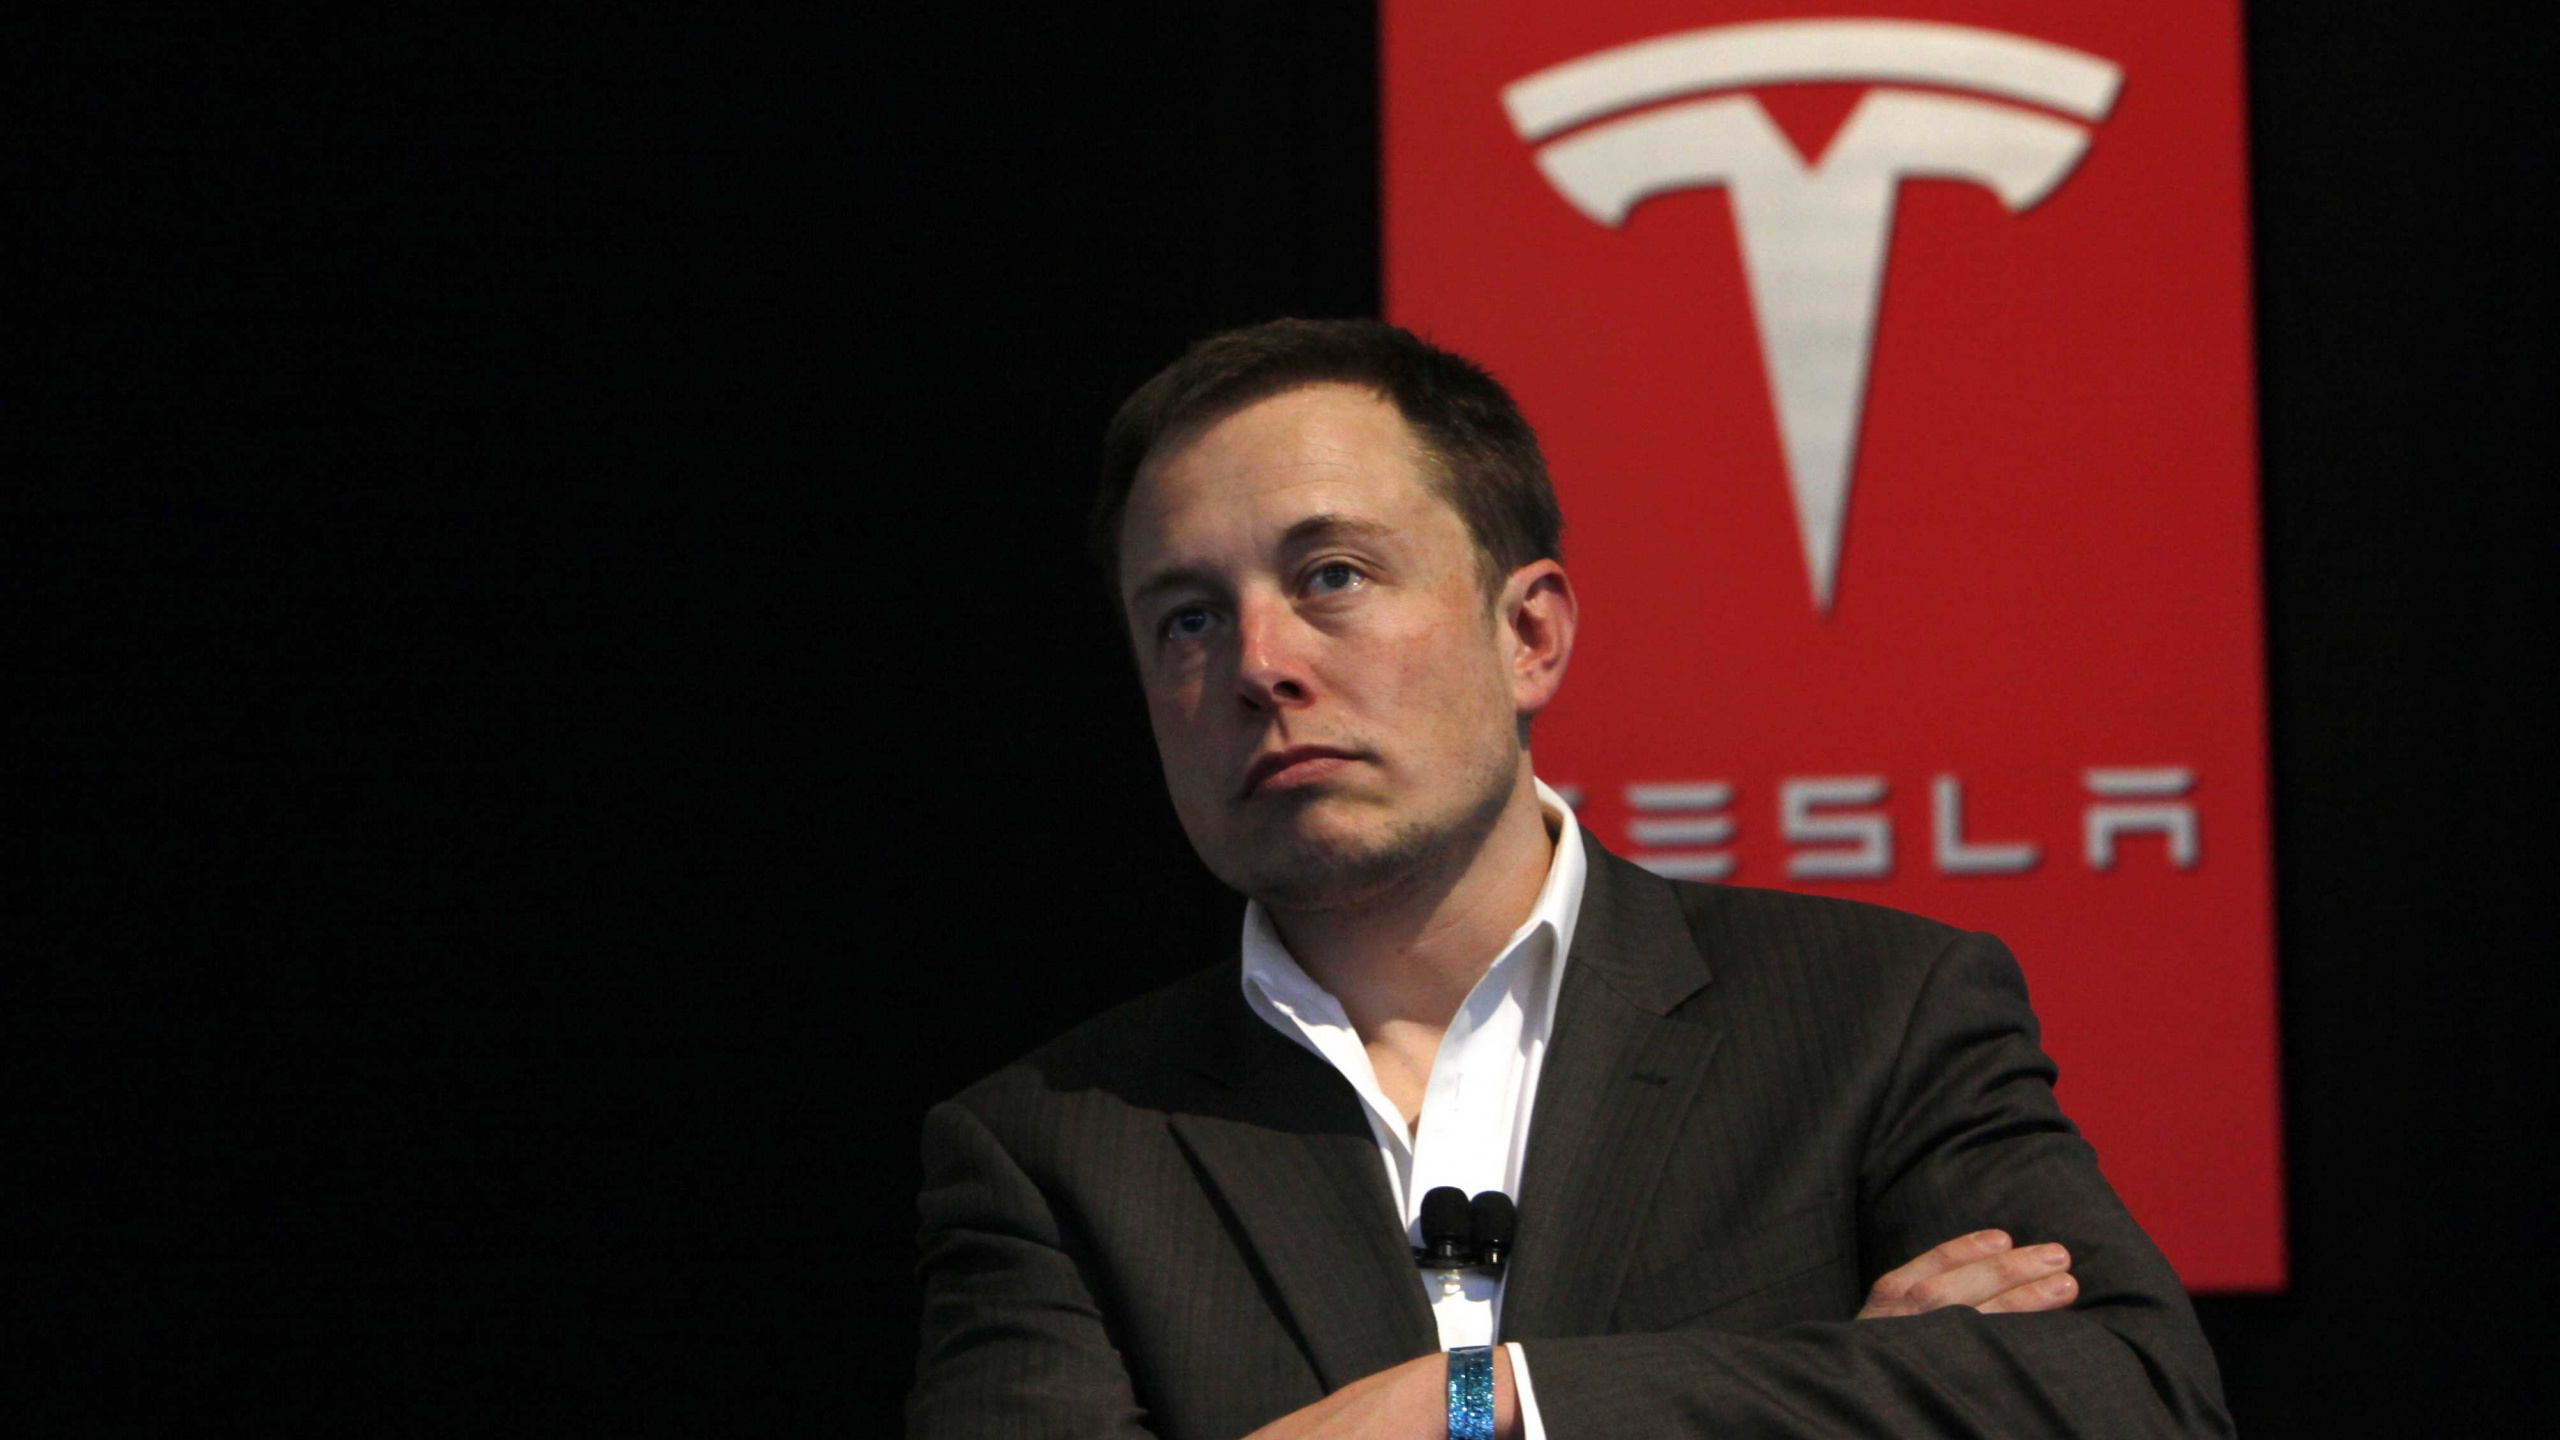 Elon Musk, Tesla Model S, Tesla Model X, Car, Public Speaking. Wallpaper in 2560x1440 Resolution